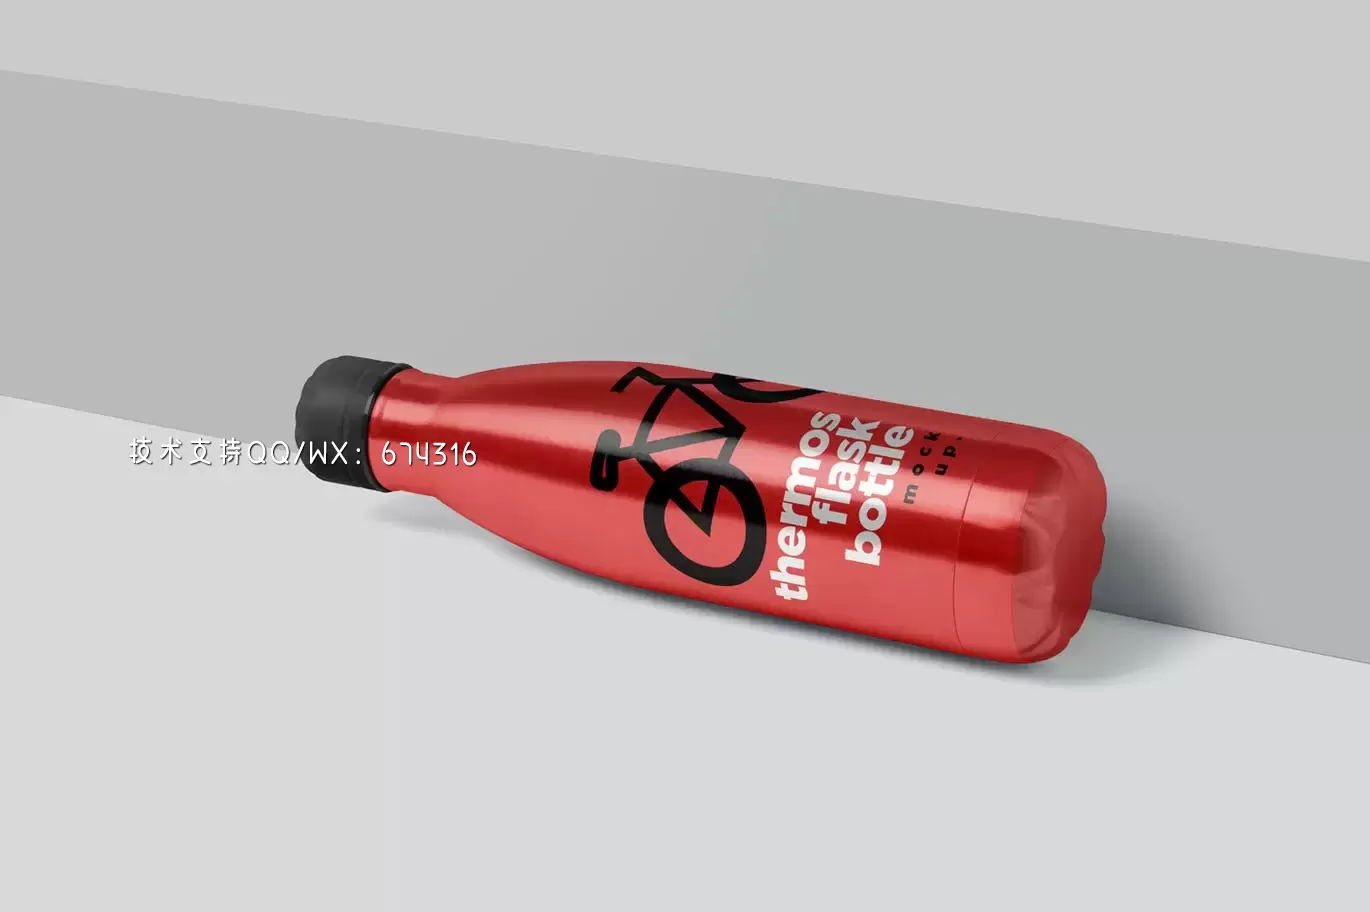 时尚高端专业的高品质真空瓶包装设计VI样机展示模型mockups免费下载插图3